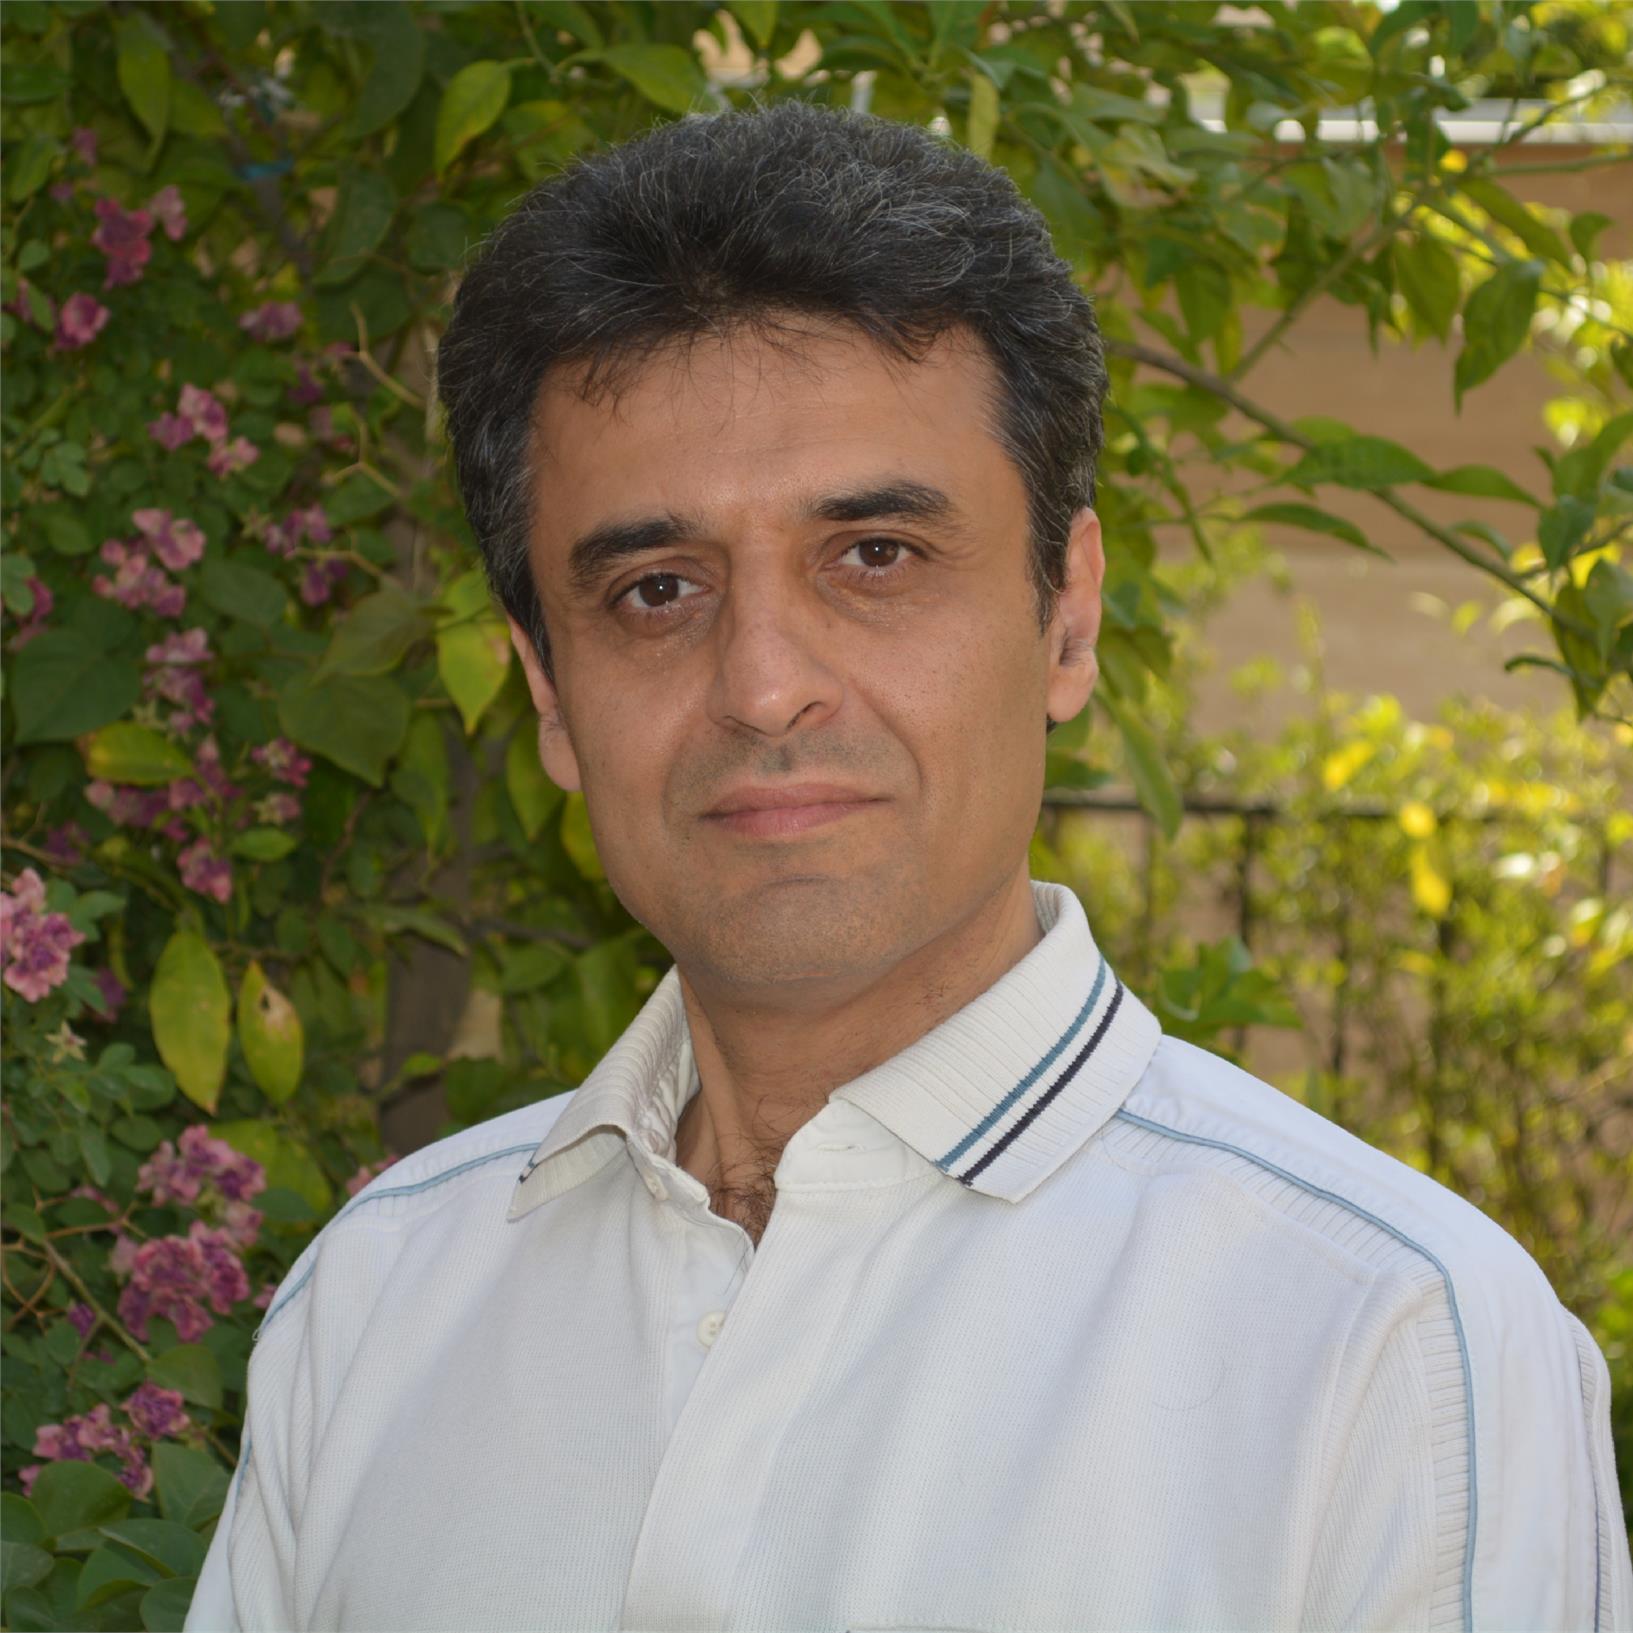 Hossein Raanaei